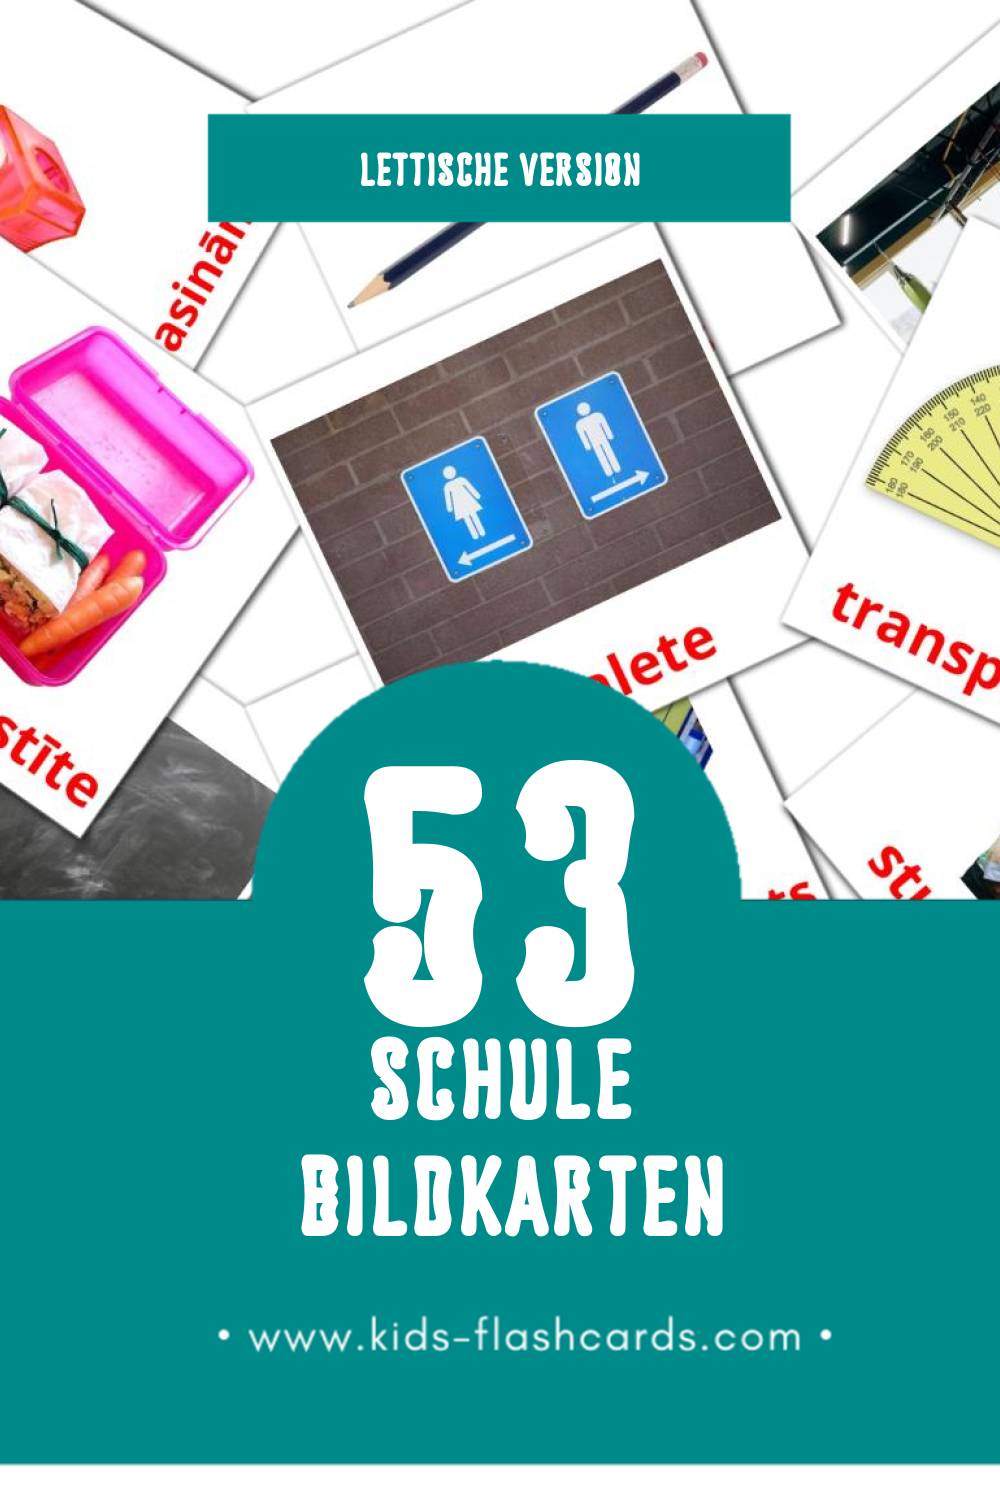 Visual Skola Flashcards für Kleinkinder (53 Karten in Lettisch)